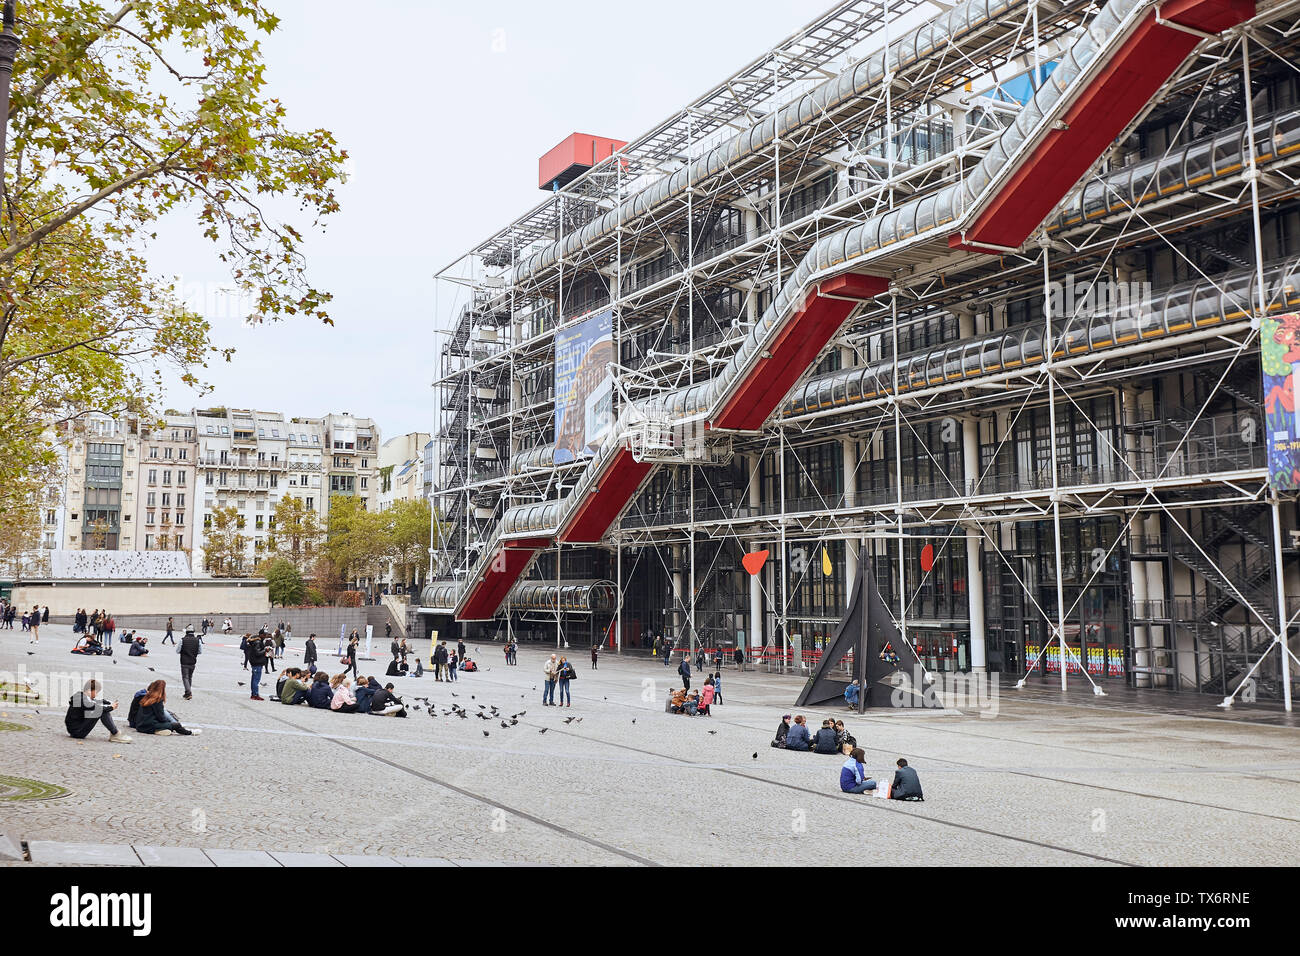 PARIS, FRANCE - 24 octobre 2017 : Façade du Centre de Georges Pompidou - Musée d'Art moderne, a été conçu dans le style de l'architecture high-tech Banque D'Images